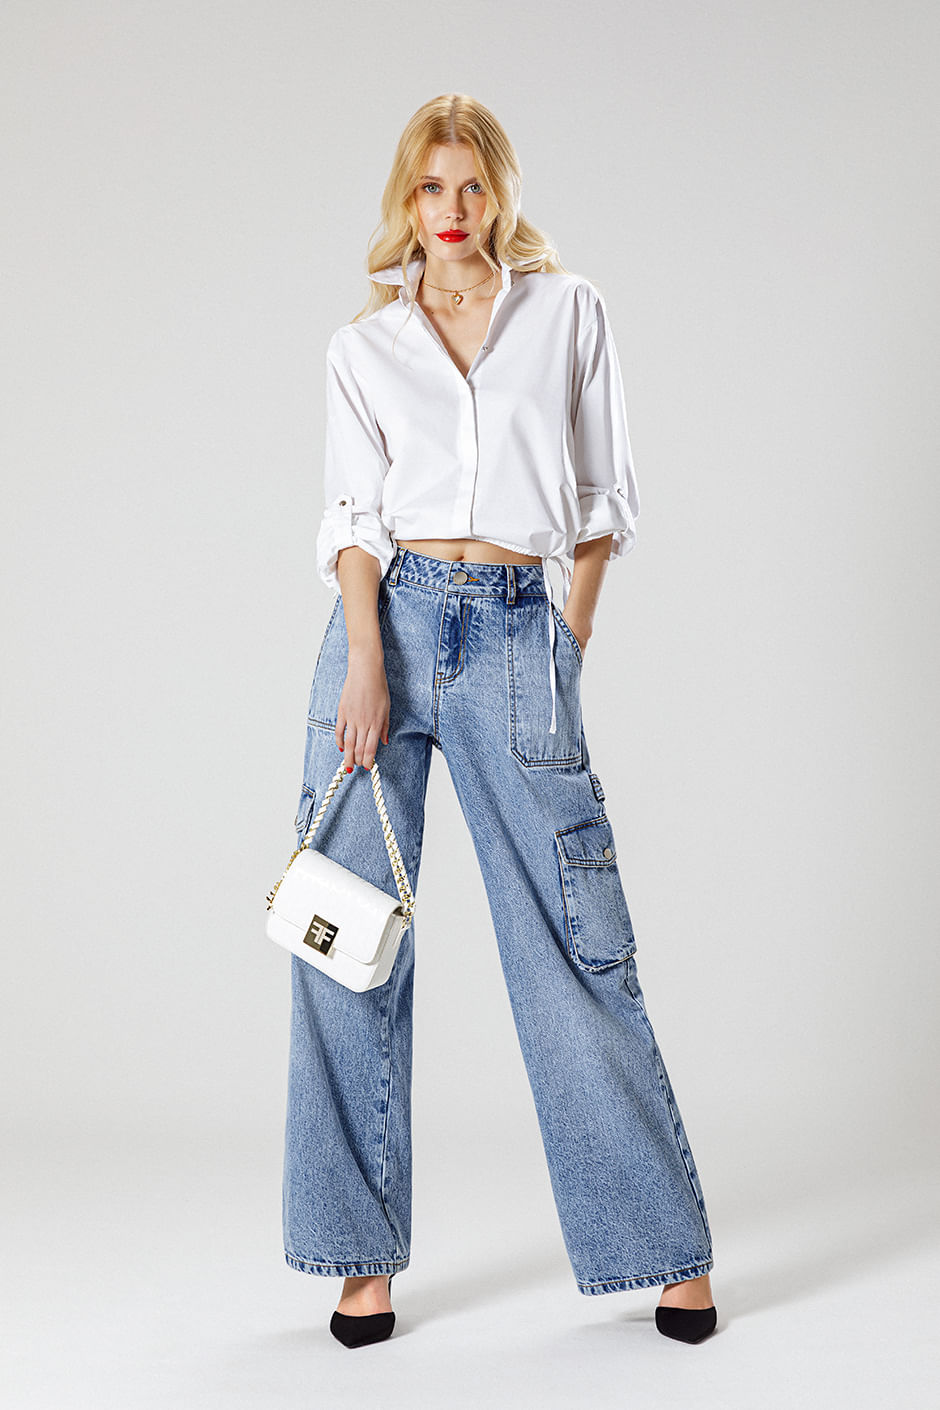 Foto de modelo usando blusa blanca, jean tipo cargo, bolsa de mano y zapatos cerrados color negro 